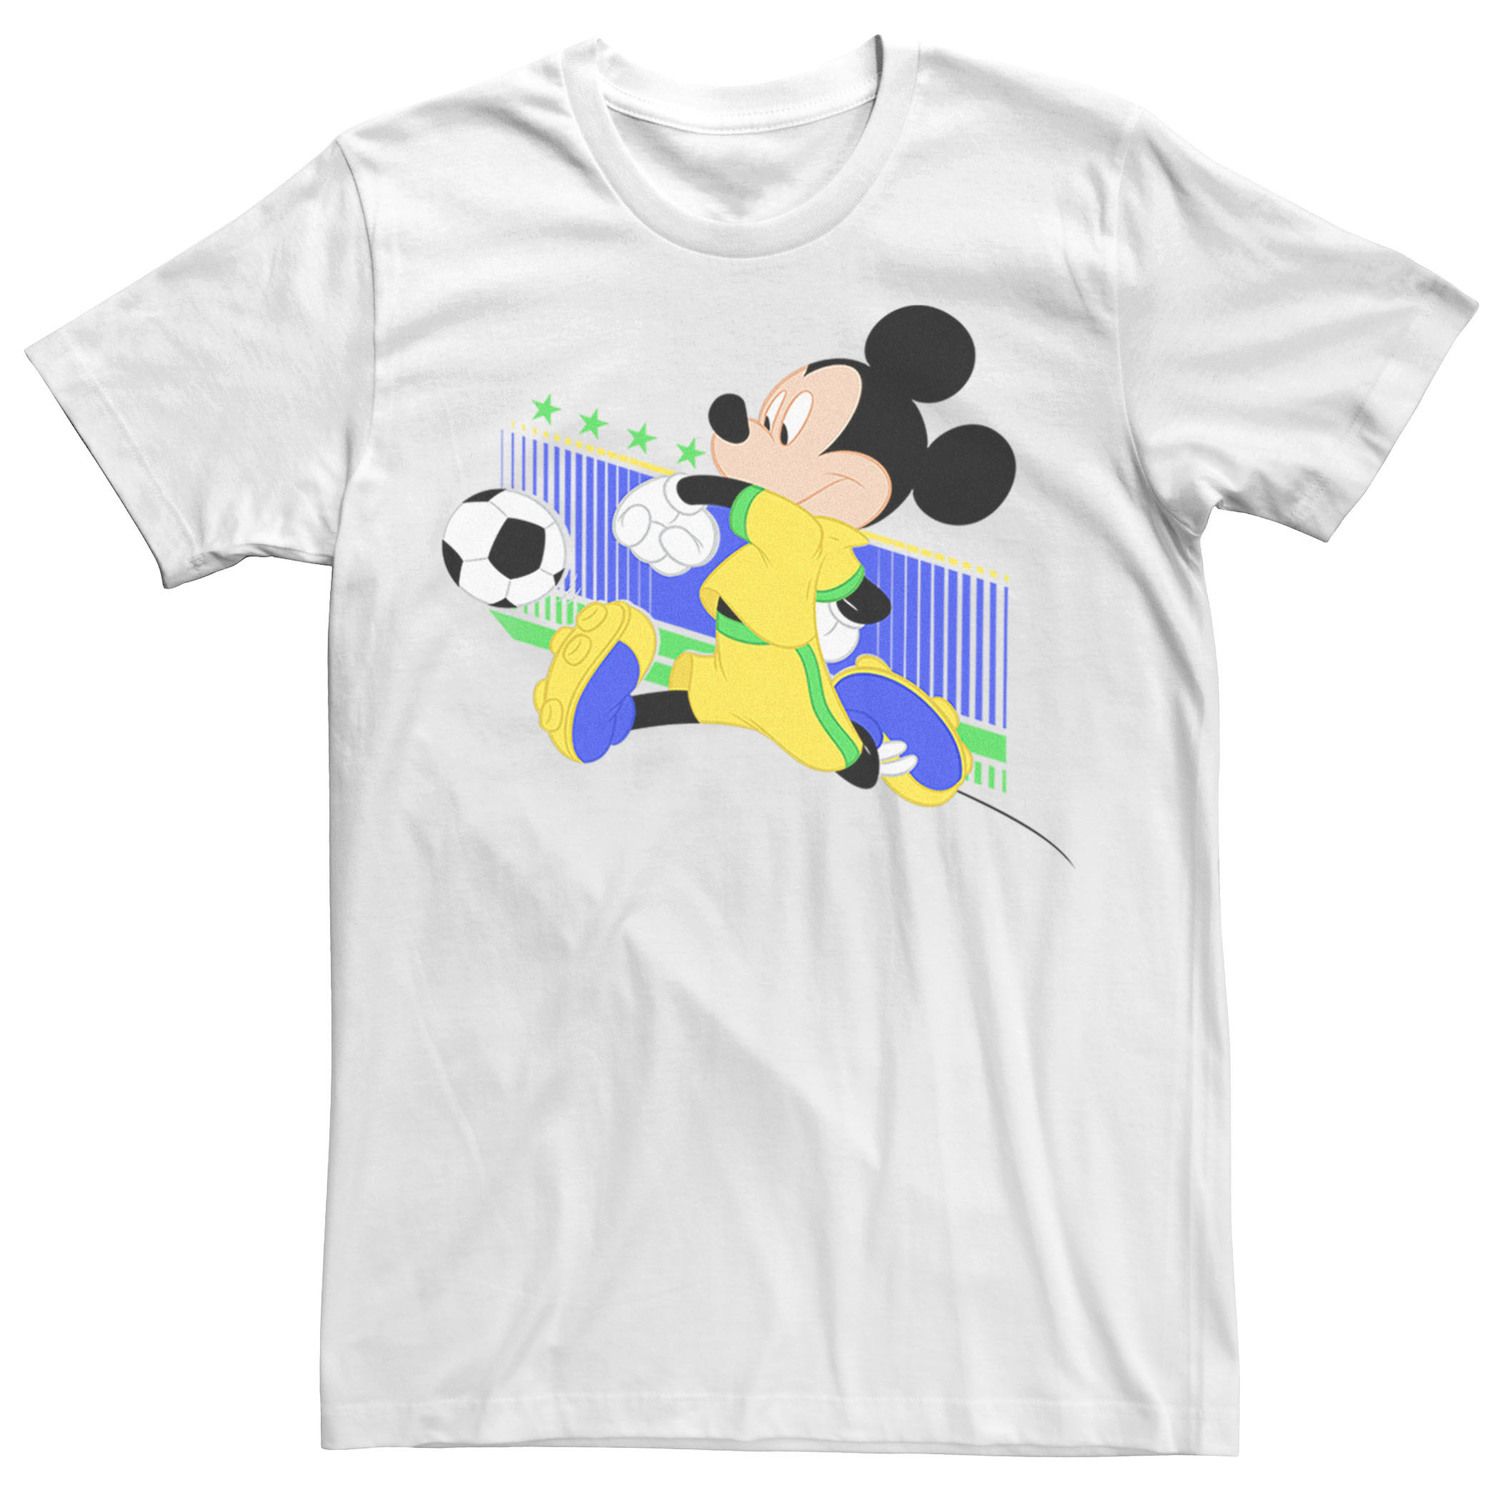 Мужская футболка с изображением Микки Мауса, бразильская футбольная форма, портретная футболка Disney мужская футболка с изображением микки мауса бразильская футбольная форма портретная футболка disney